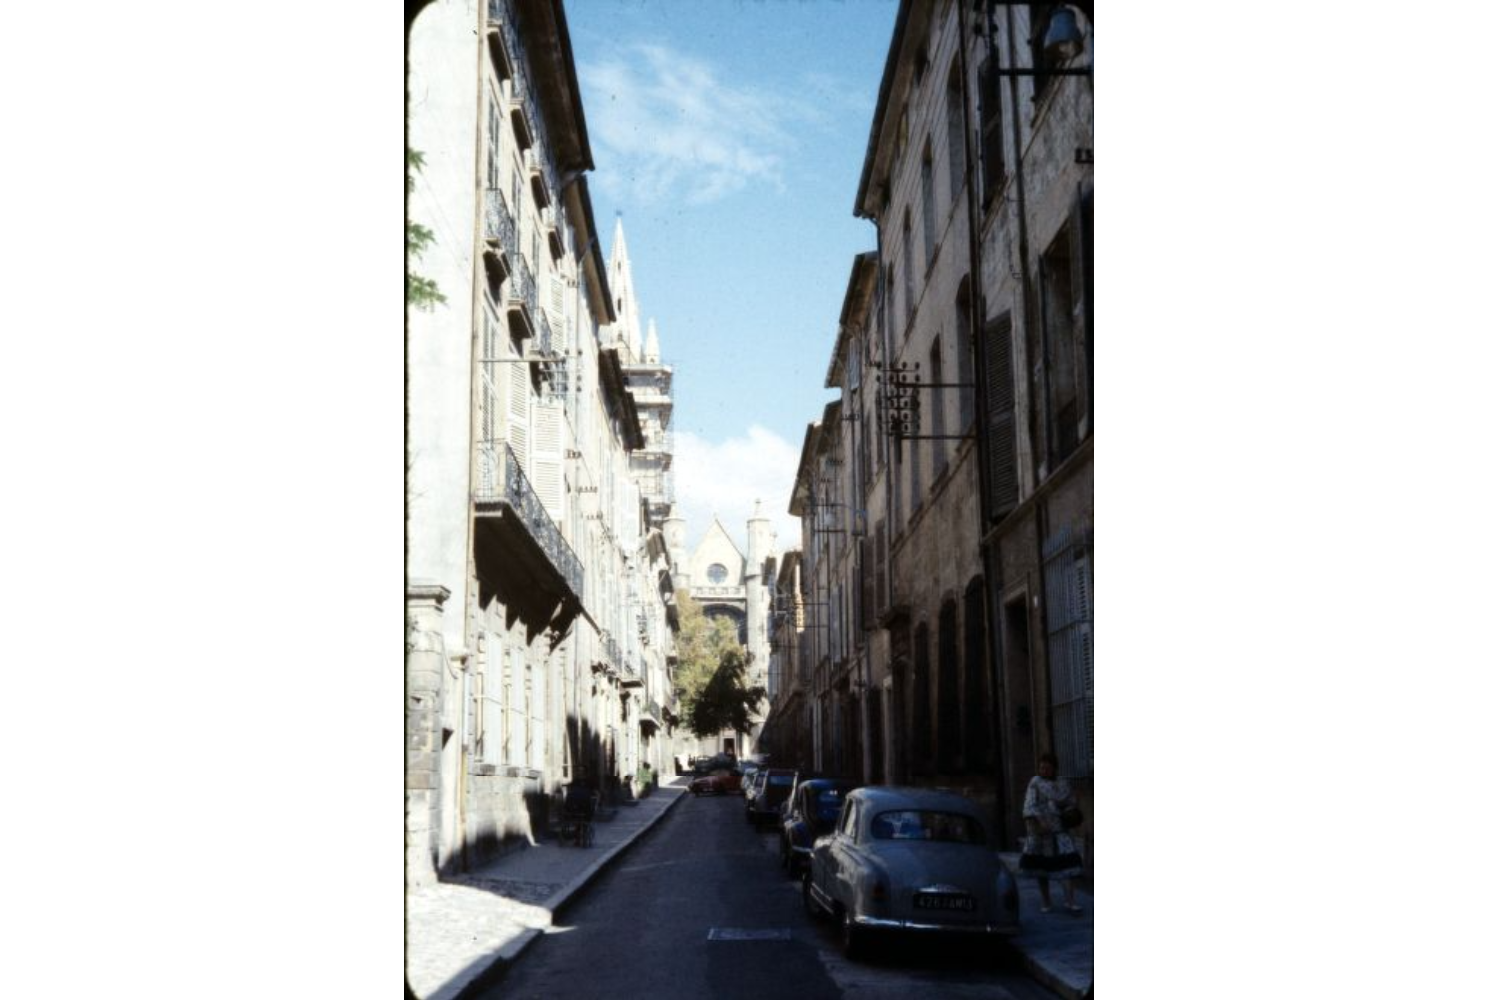 Street scene in Aix-en-Provence